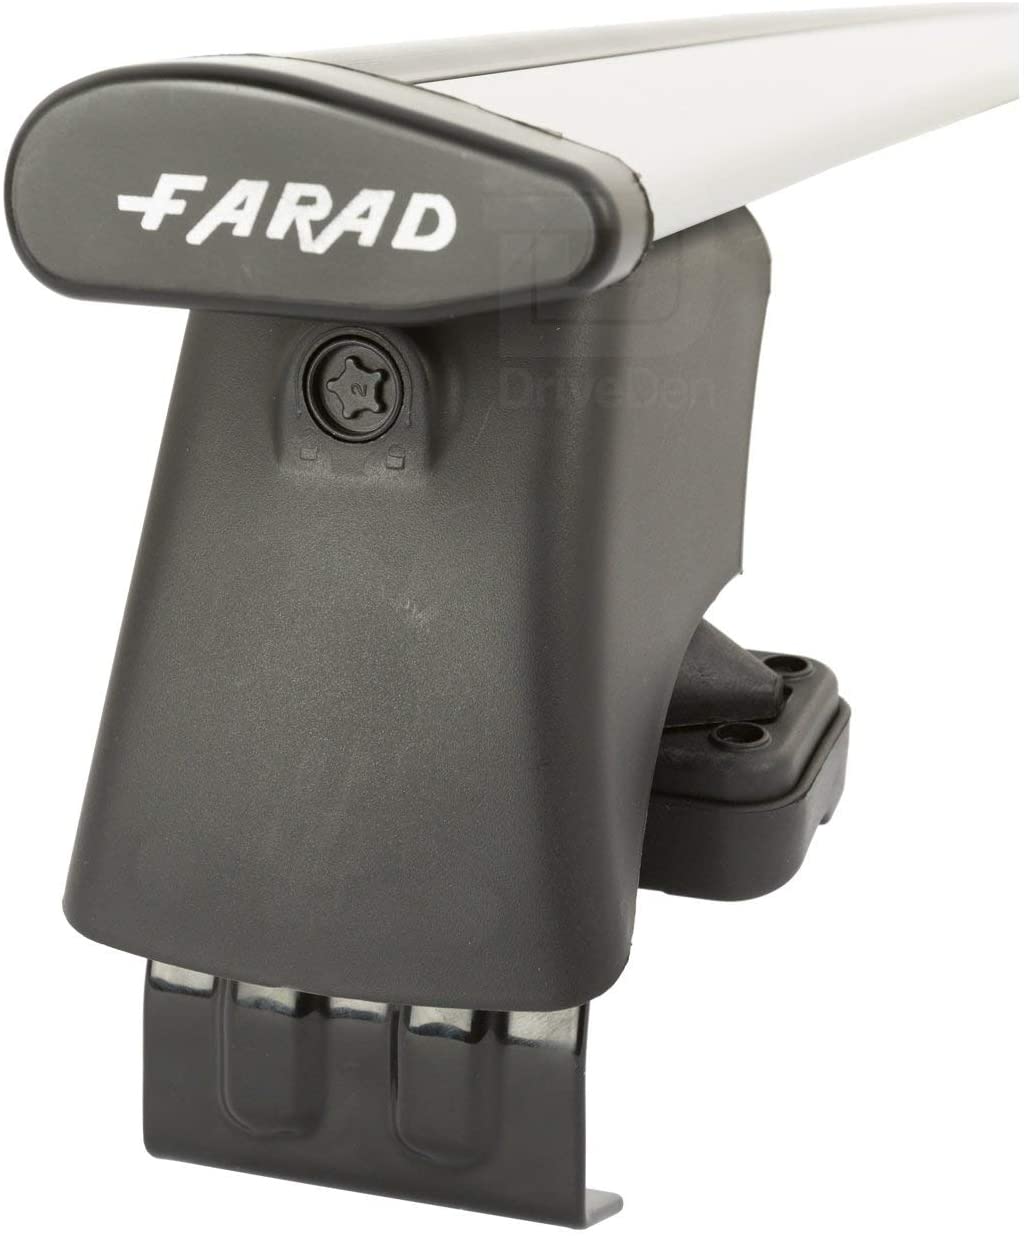 FARAD-Kit H2 per barre portatutto - Hyundai I 30 Fastback 2019> (senza corrimano)